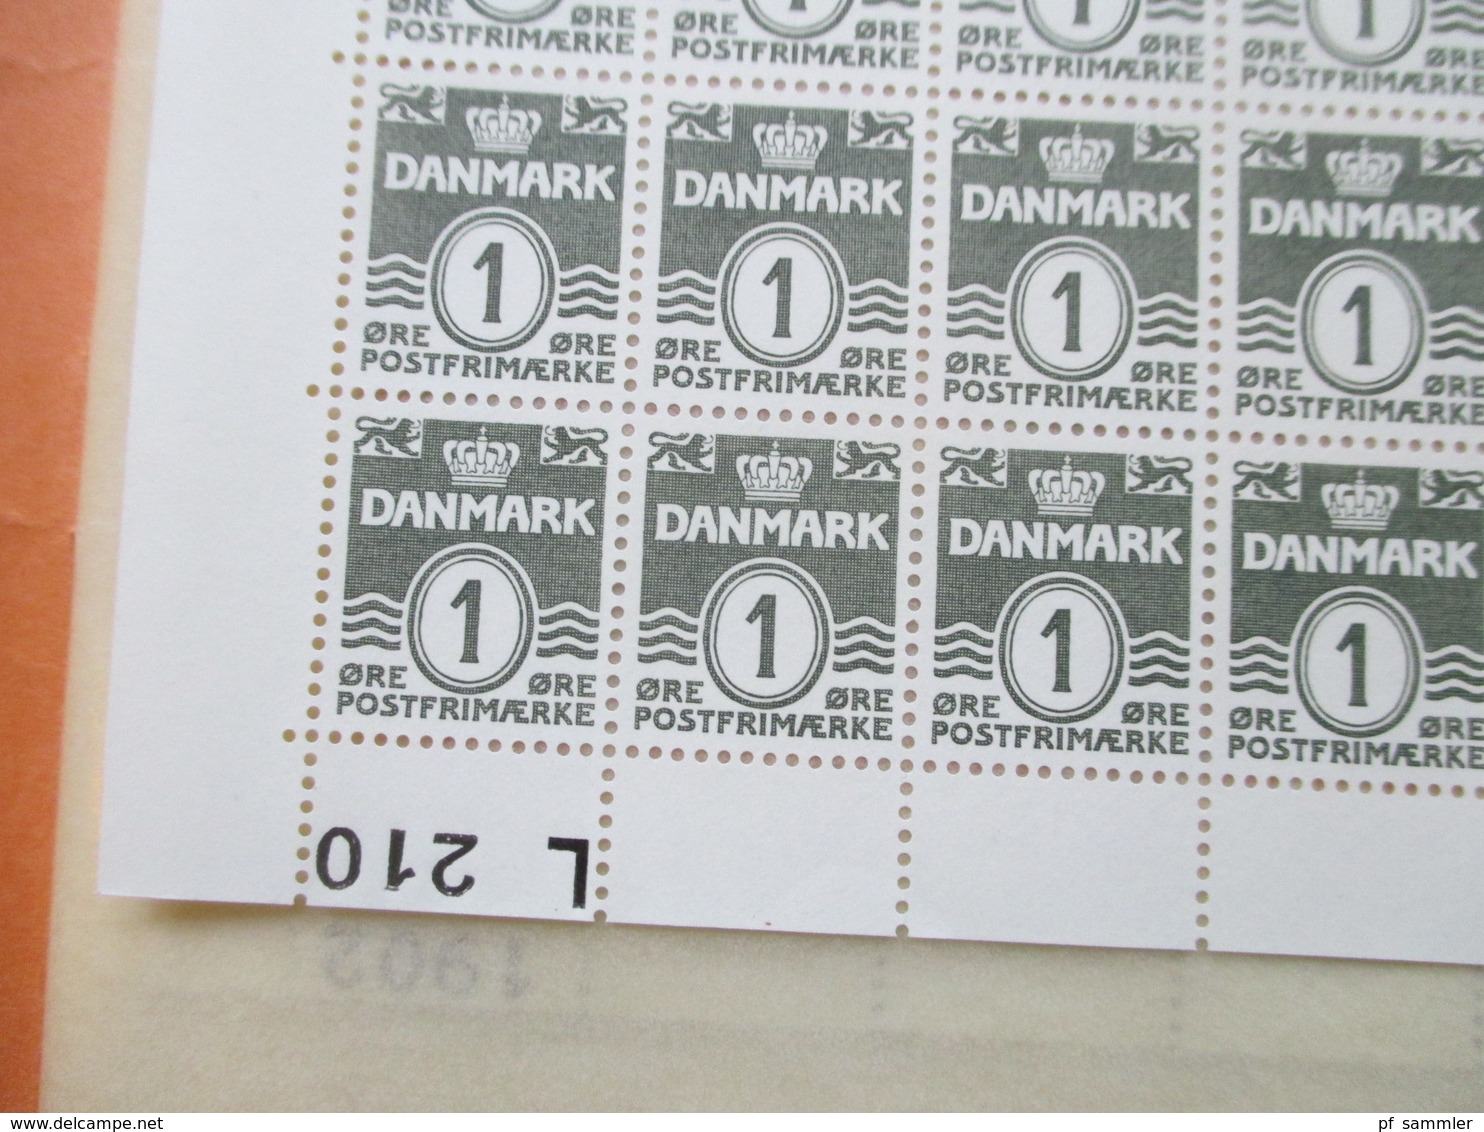 Dänemark kleiner Bogenposten Freimarken Wellenlinien + Nr. 377 Weltflüchtlingsjahr 1950er / 60er Jahre in Bogenmappe